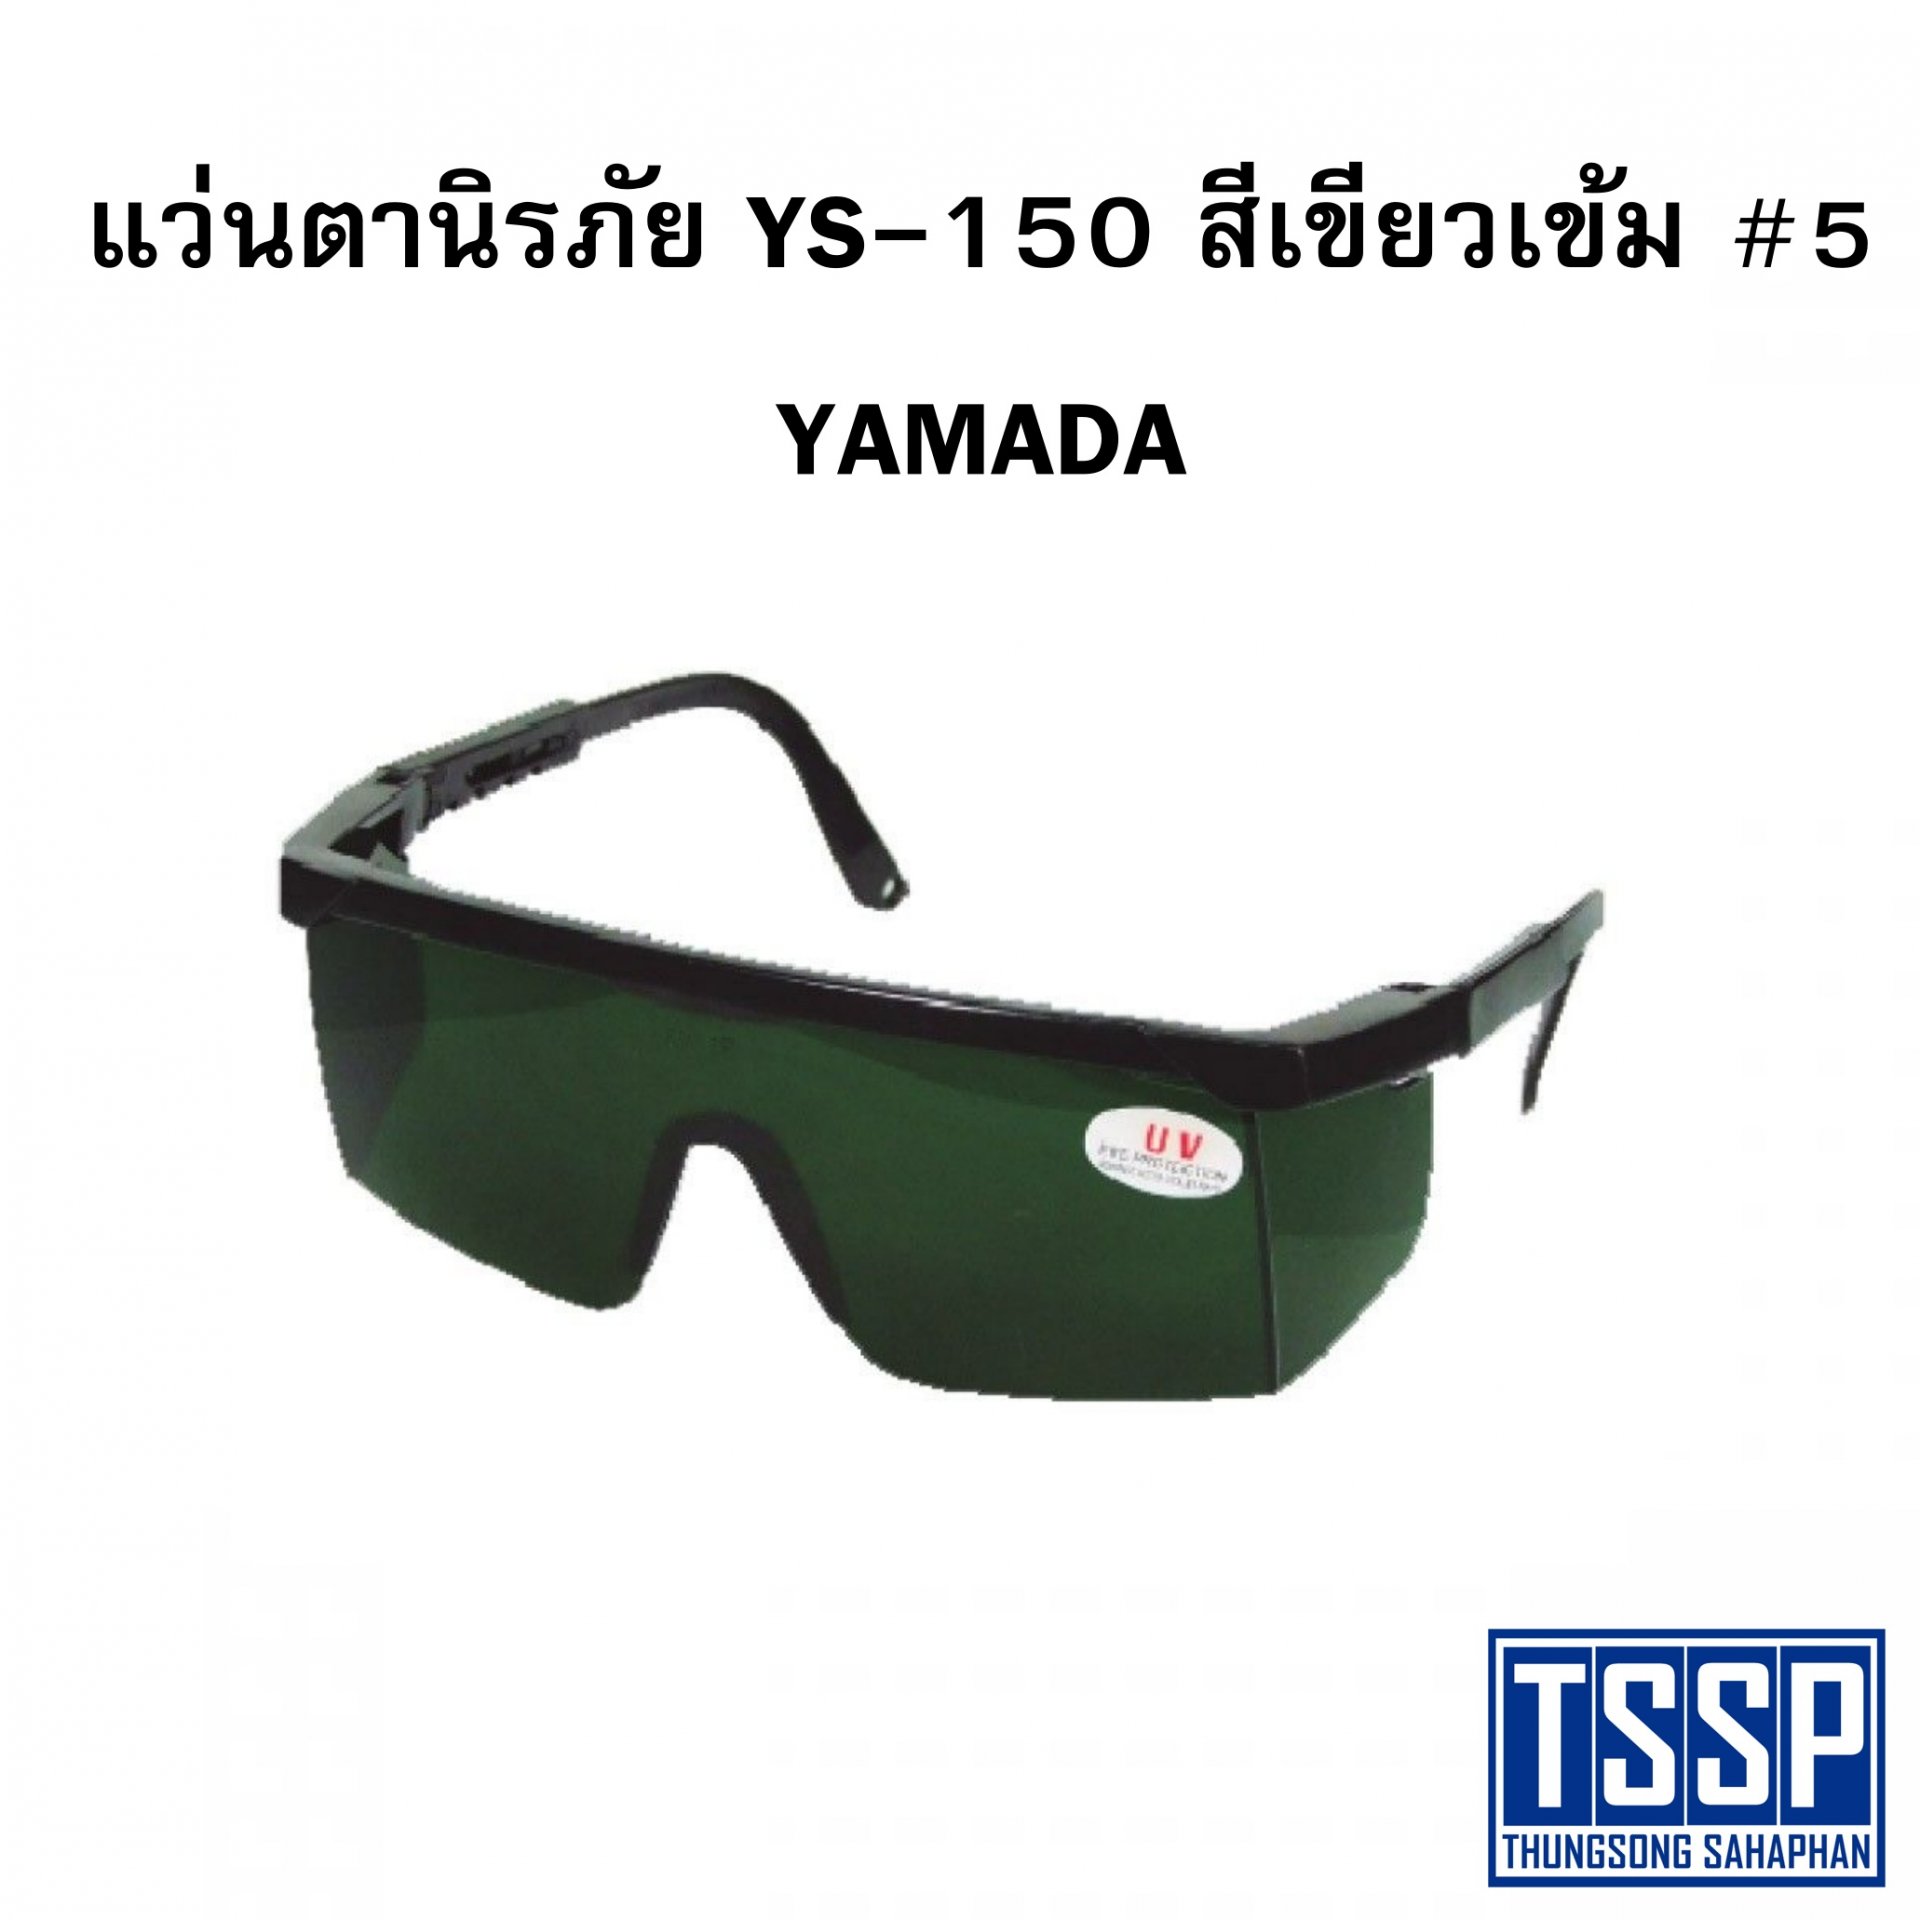 แว่นตานิรภัย YS-150 สีเขียวเข้ม #5 YAMADA